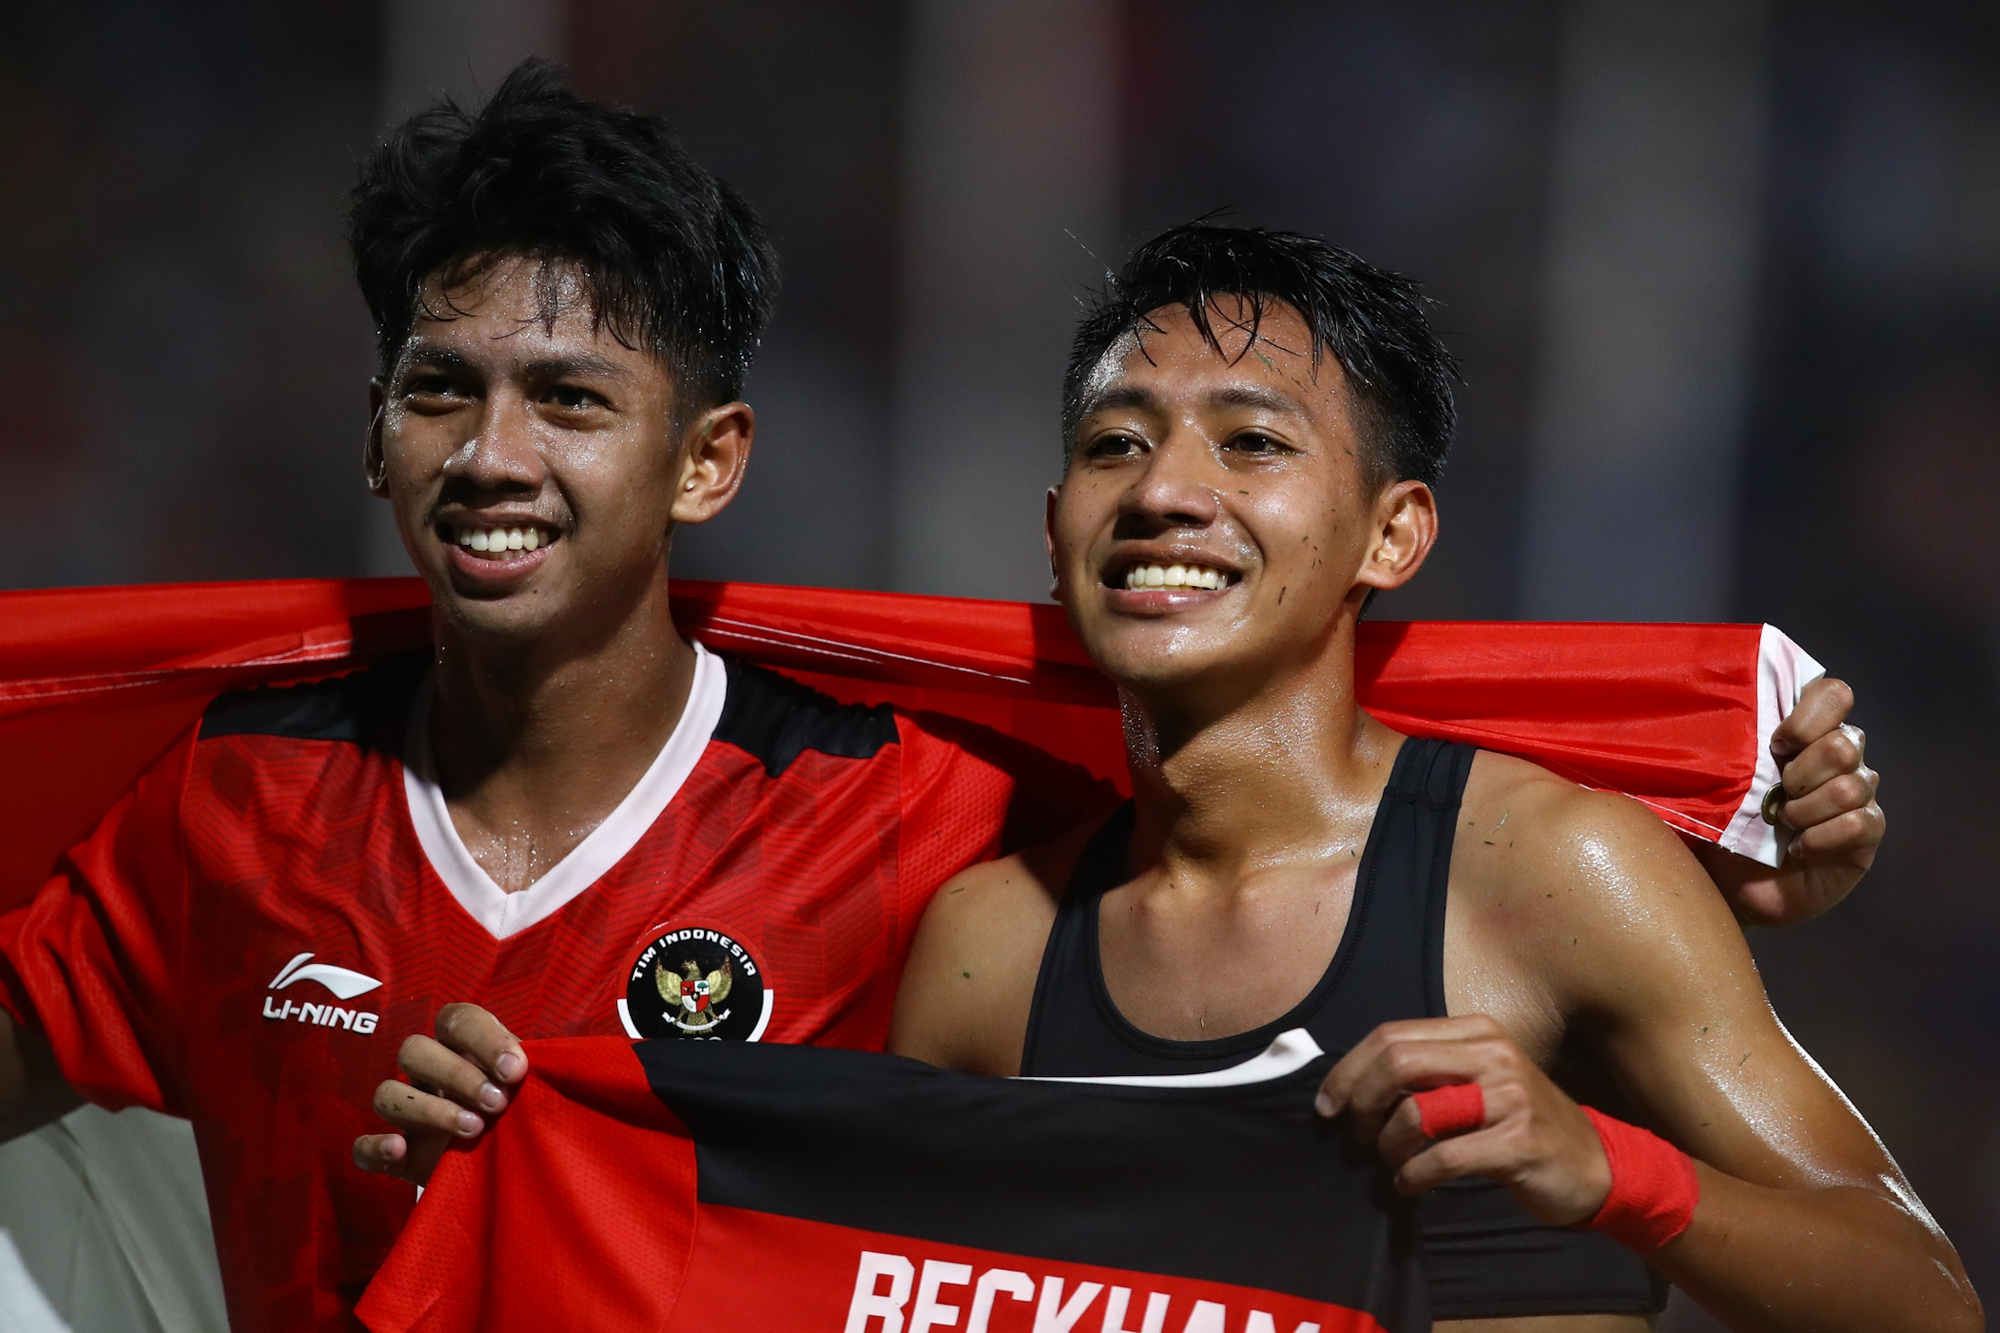 Beckham của Indonesia bật khóc nức nở trong trận chung kết kỳ lạ bậc nhất lịch sử SEA Games - Ảnh 3.